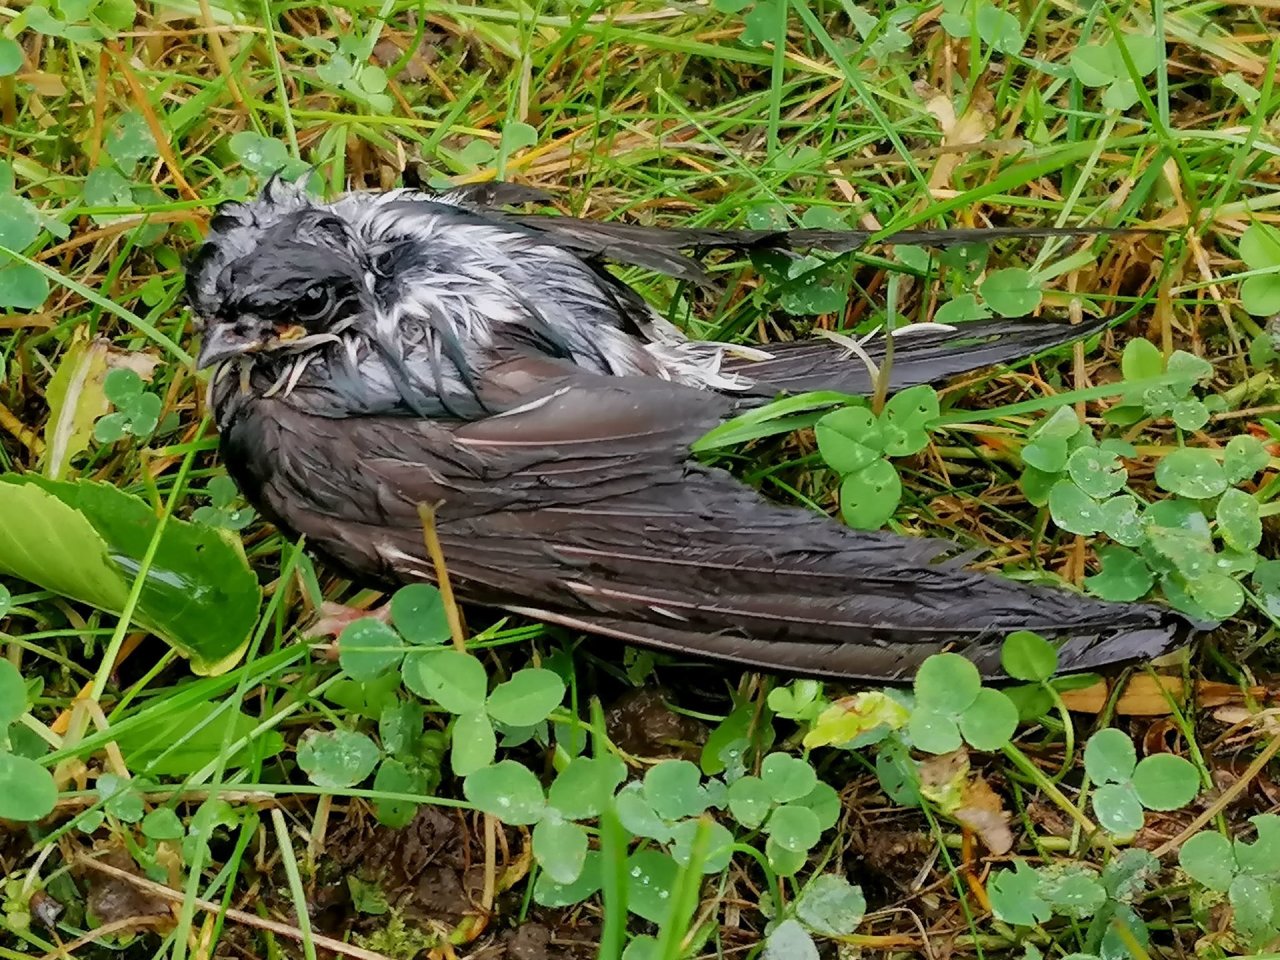 Ką daryti, jei po audros kieme radote nepaskrendantį paukštį: specialistai griežtai nesiūlo vieno dalyko